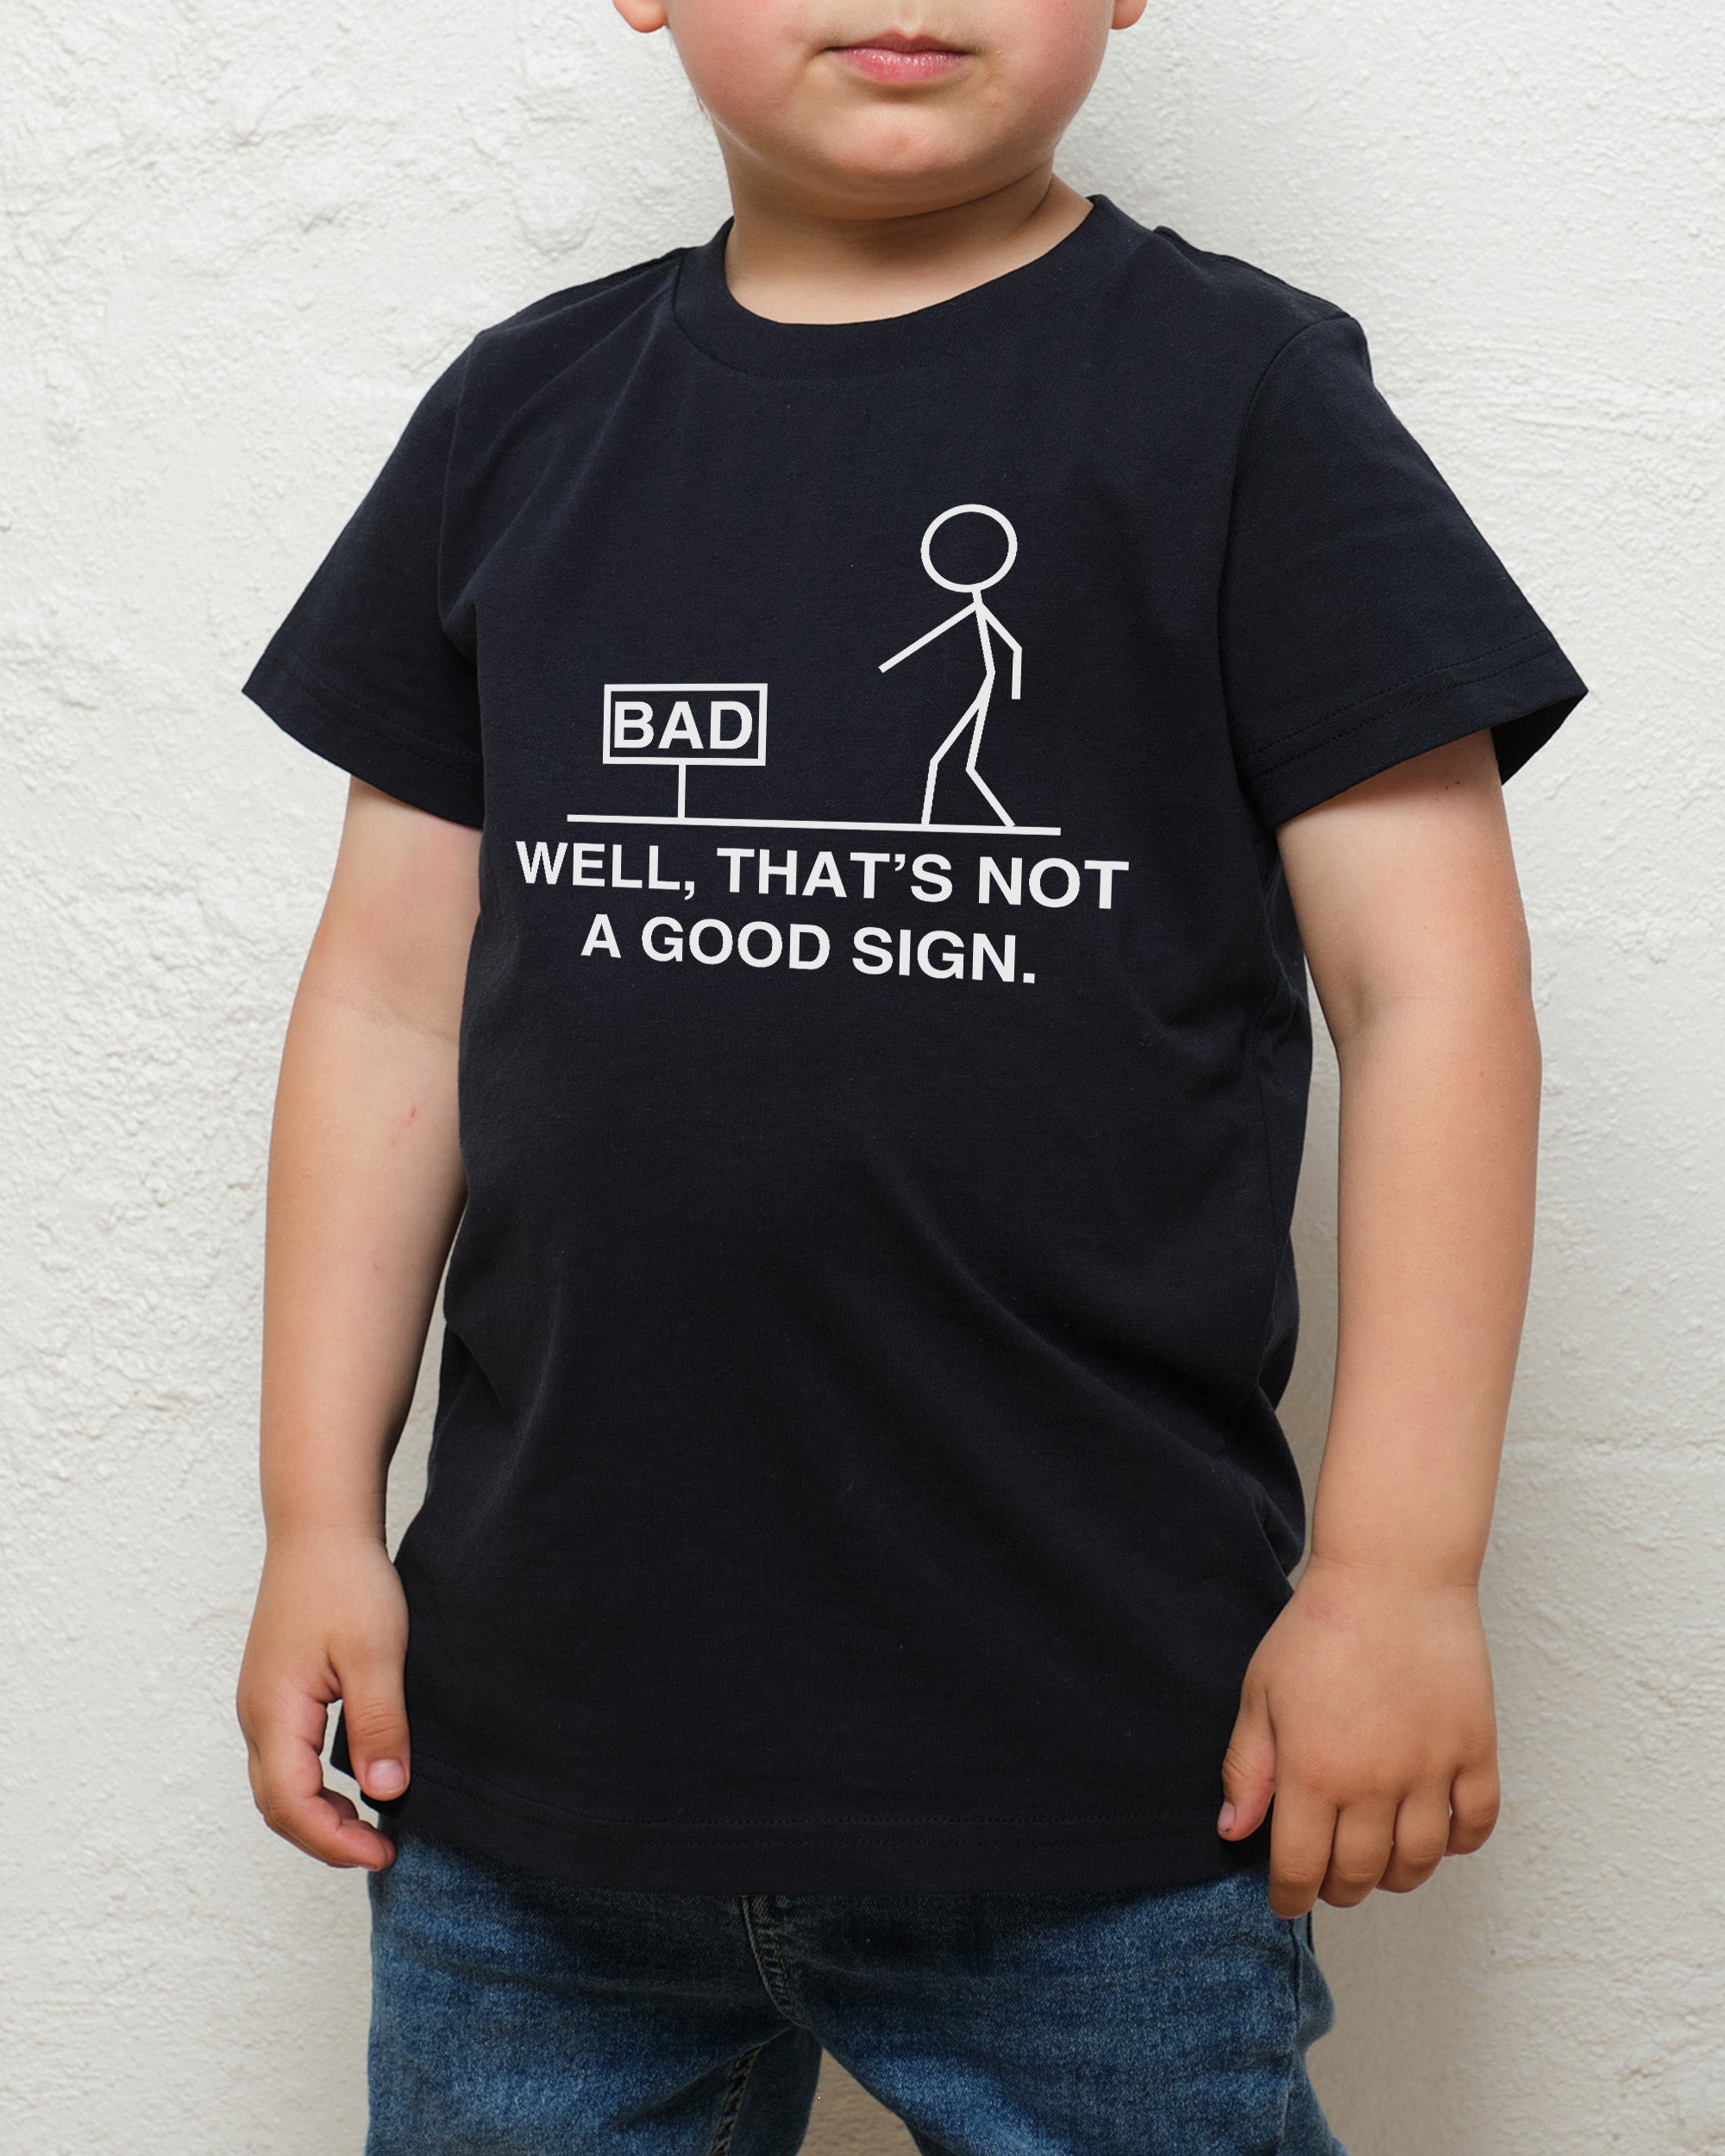 Not a Good Sign Kids T-Shirt